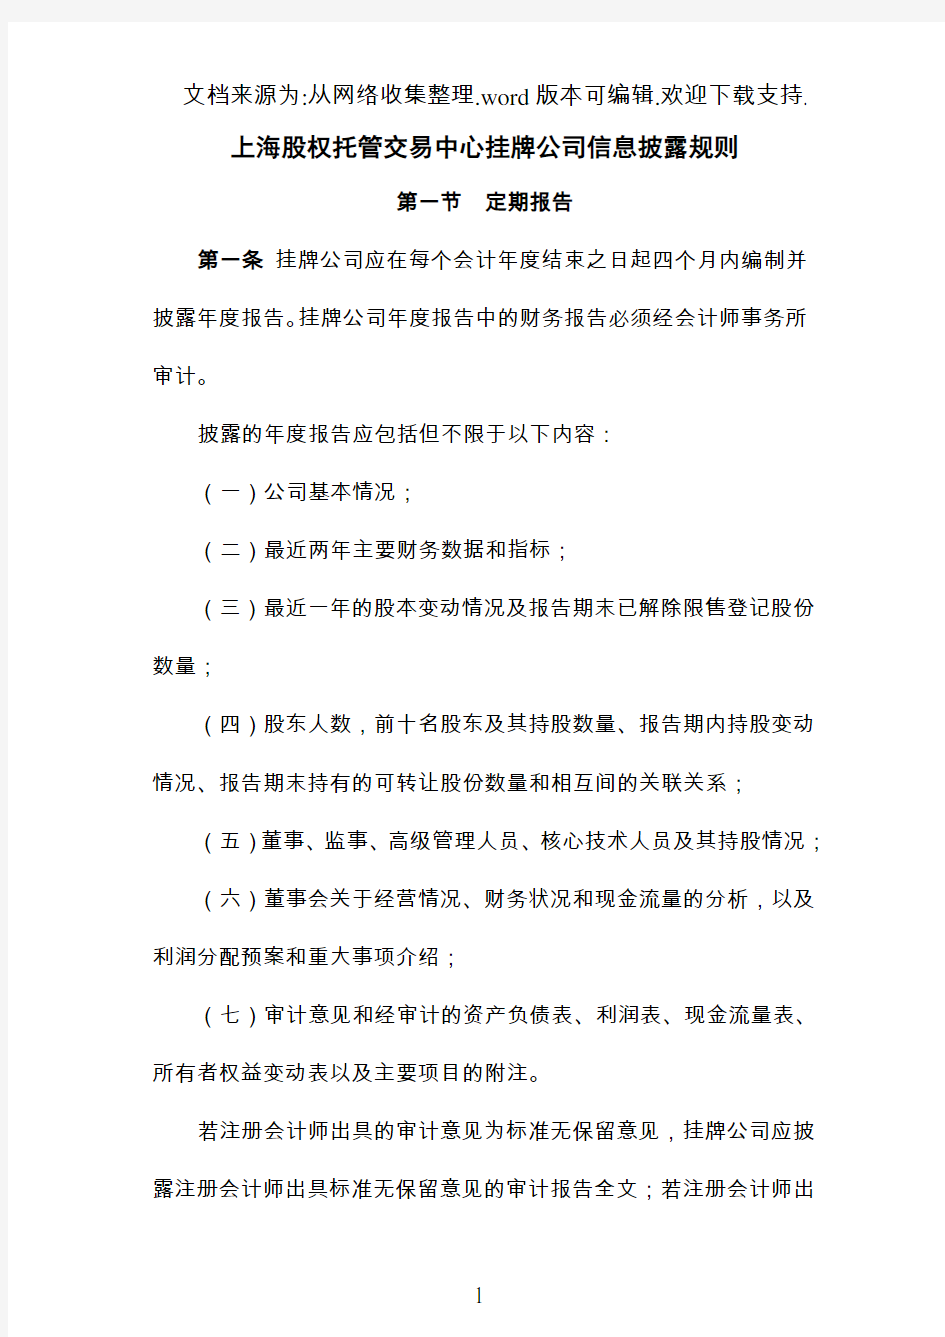 上海股交中心挂牌公司信息披露规则(修改版)